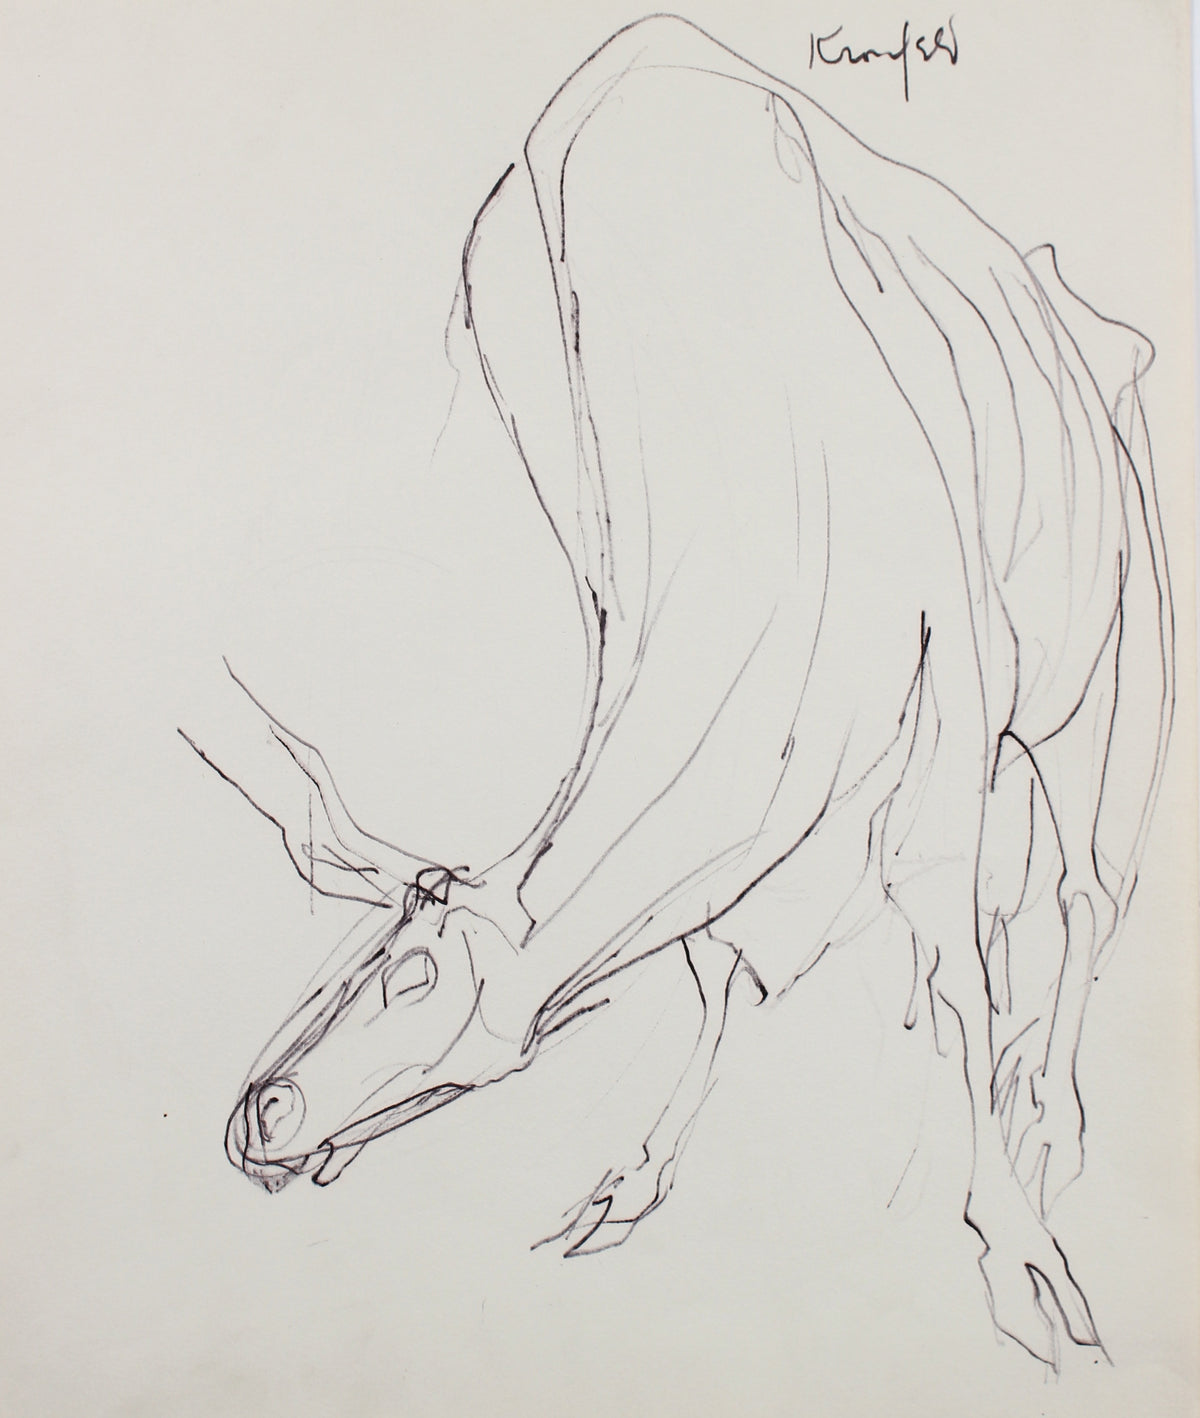 Modernist Water Buffalo&lt;br&gt;1960-80s Ink&lt;br&gt;&lt;br&gt;#99510